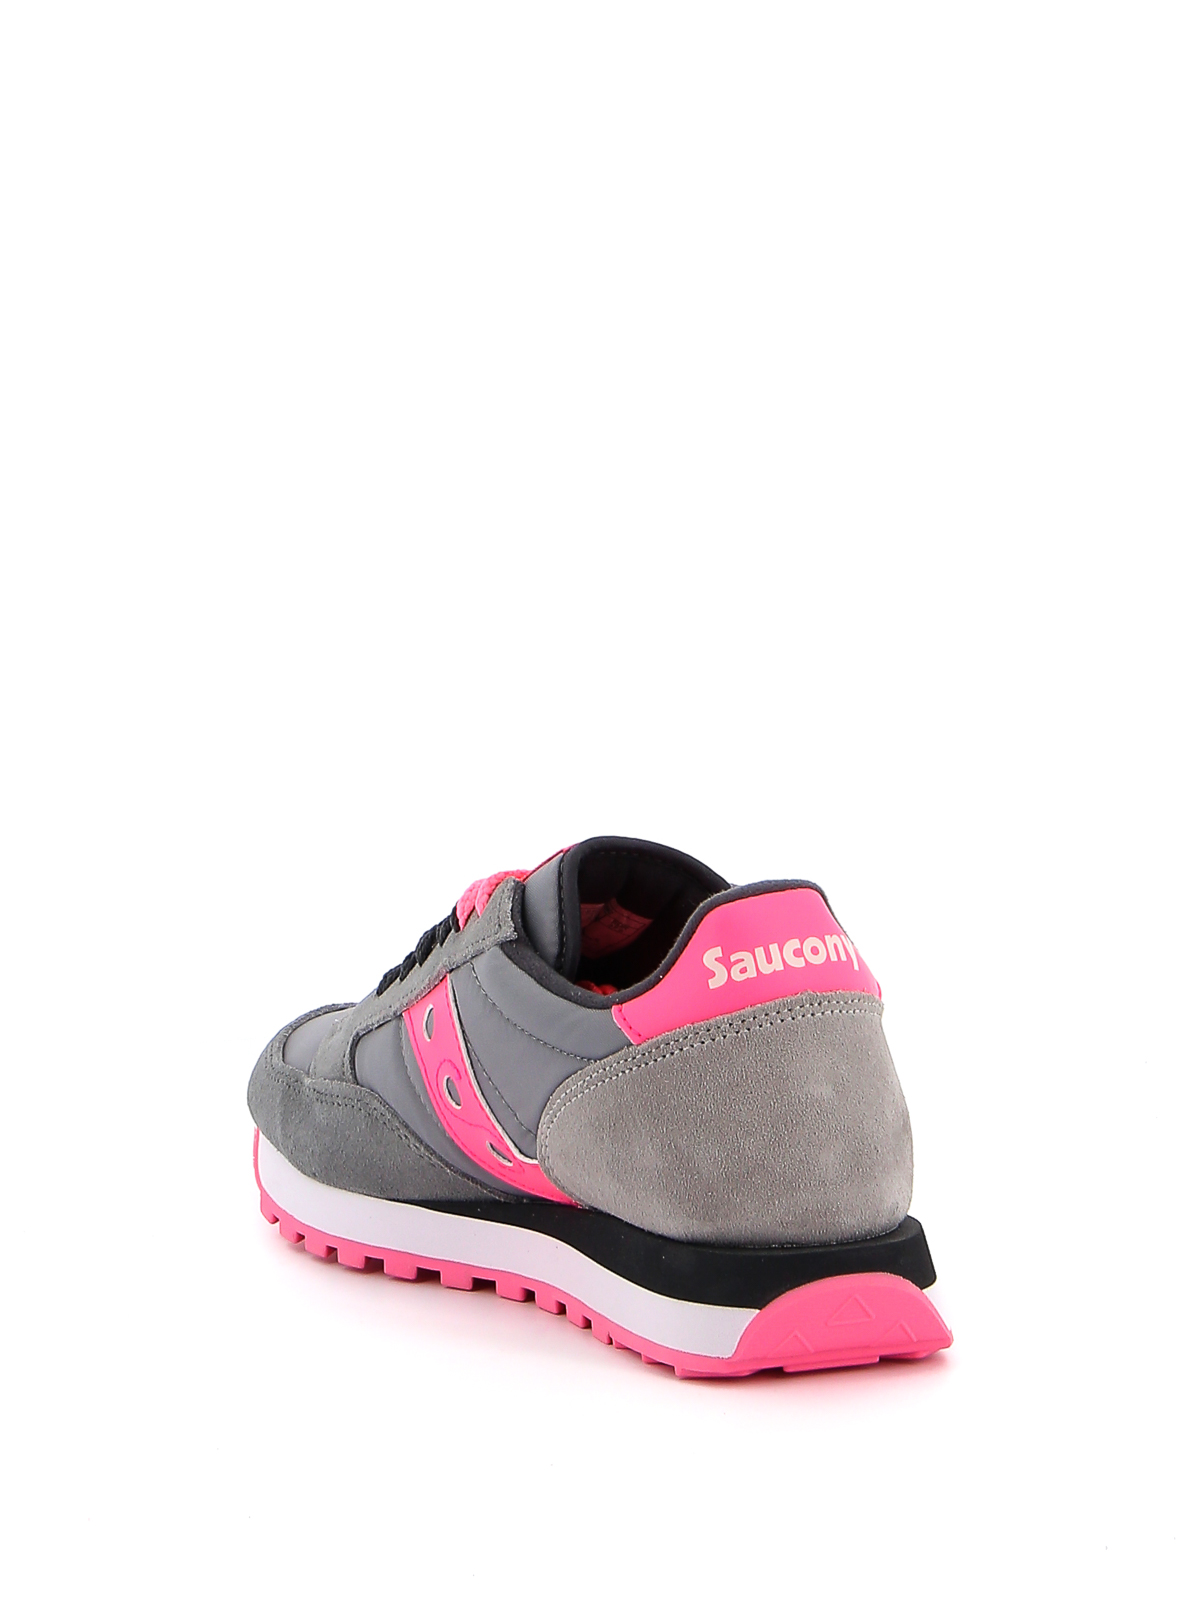 Saucony - Jazz Original sneakers - trainers - 1044592 | iKRIX.com